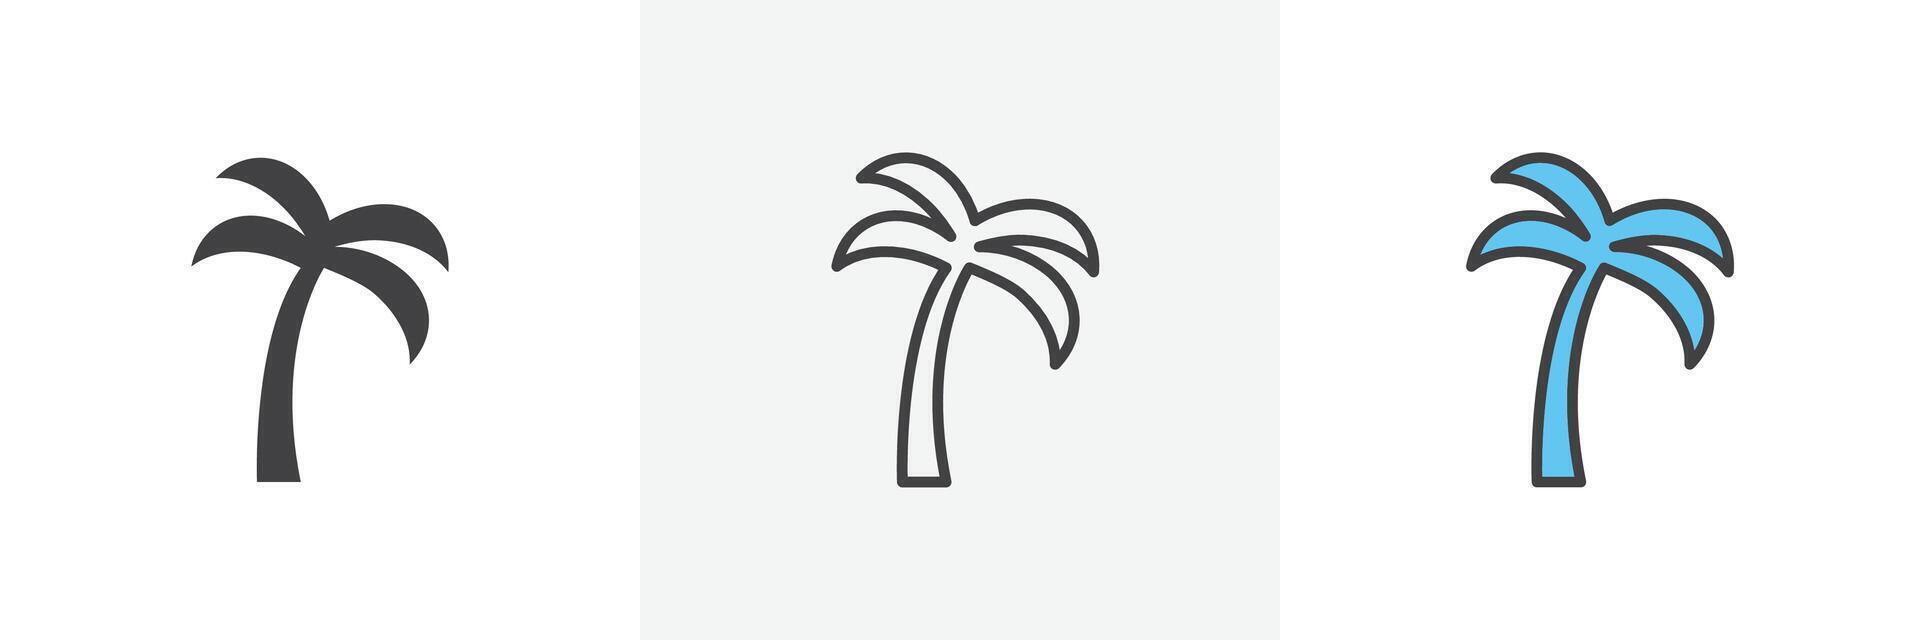 palmträ ikon vektor